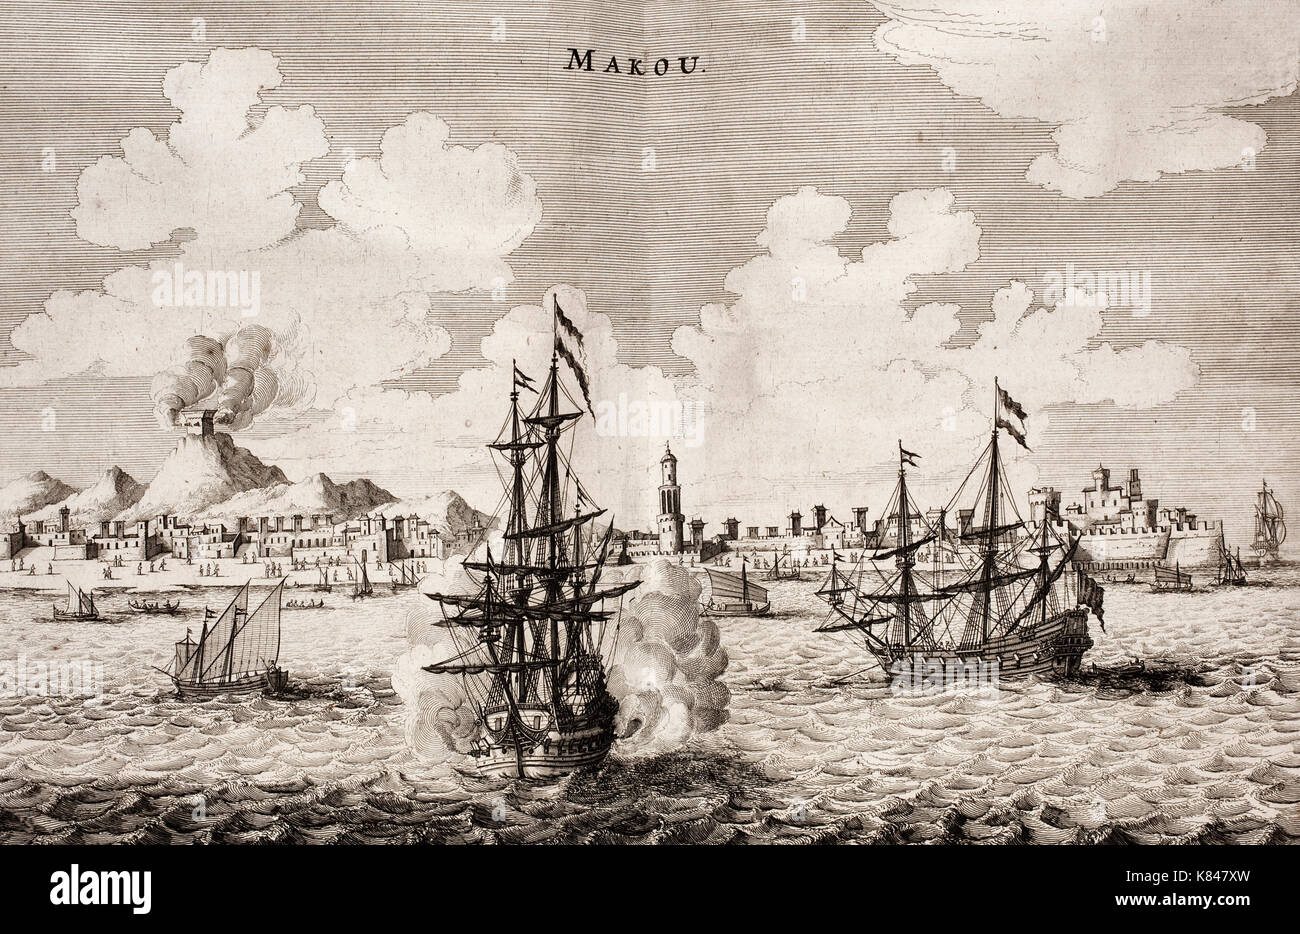 Schlacht von Macau, 21.-24. Juni 1622. Portugiesisch Niederländisch Angriff abzuwehren. Hafen von Macau (BIN akou"). Holländischen Krieg Schiff feuern Kanonen. Turm auf einem Hügel feuern Kanonen. Stockfoto